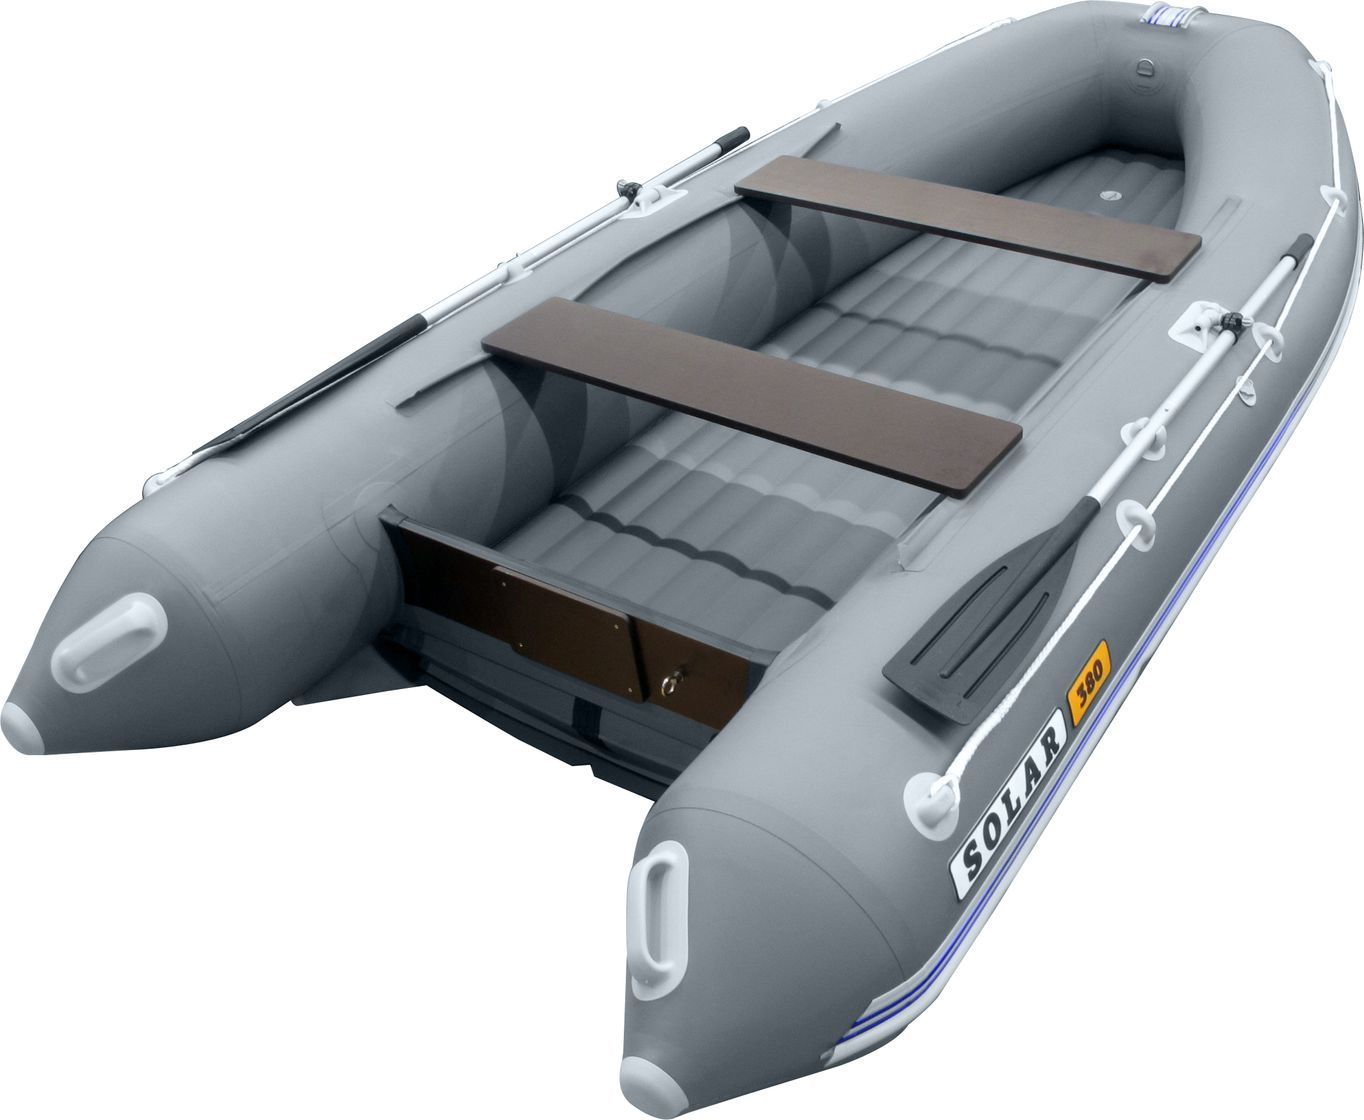 Надувная лодка ПВХ SOLAR-330 К (Оптима), серый SLR330k_opt_grey насос ножной для лодки высокого давления sscl00019100 5